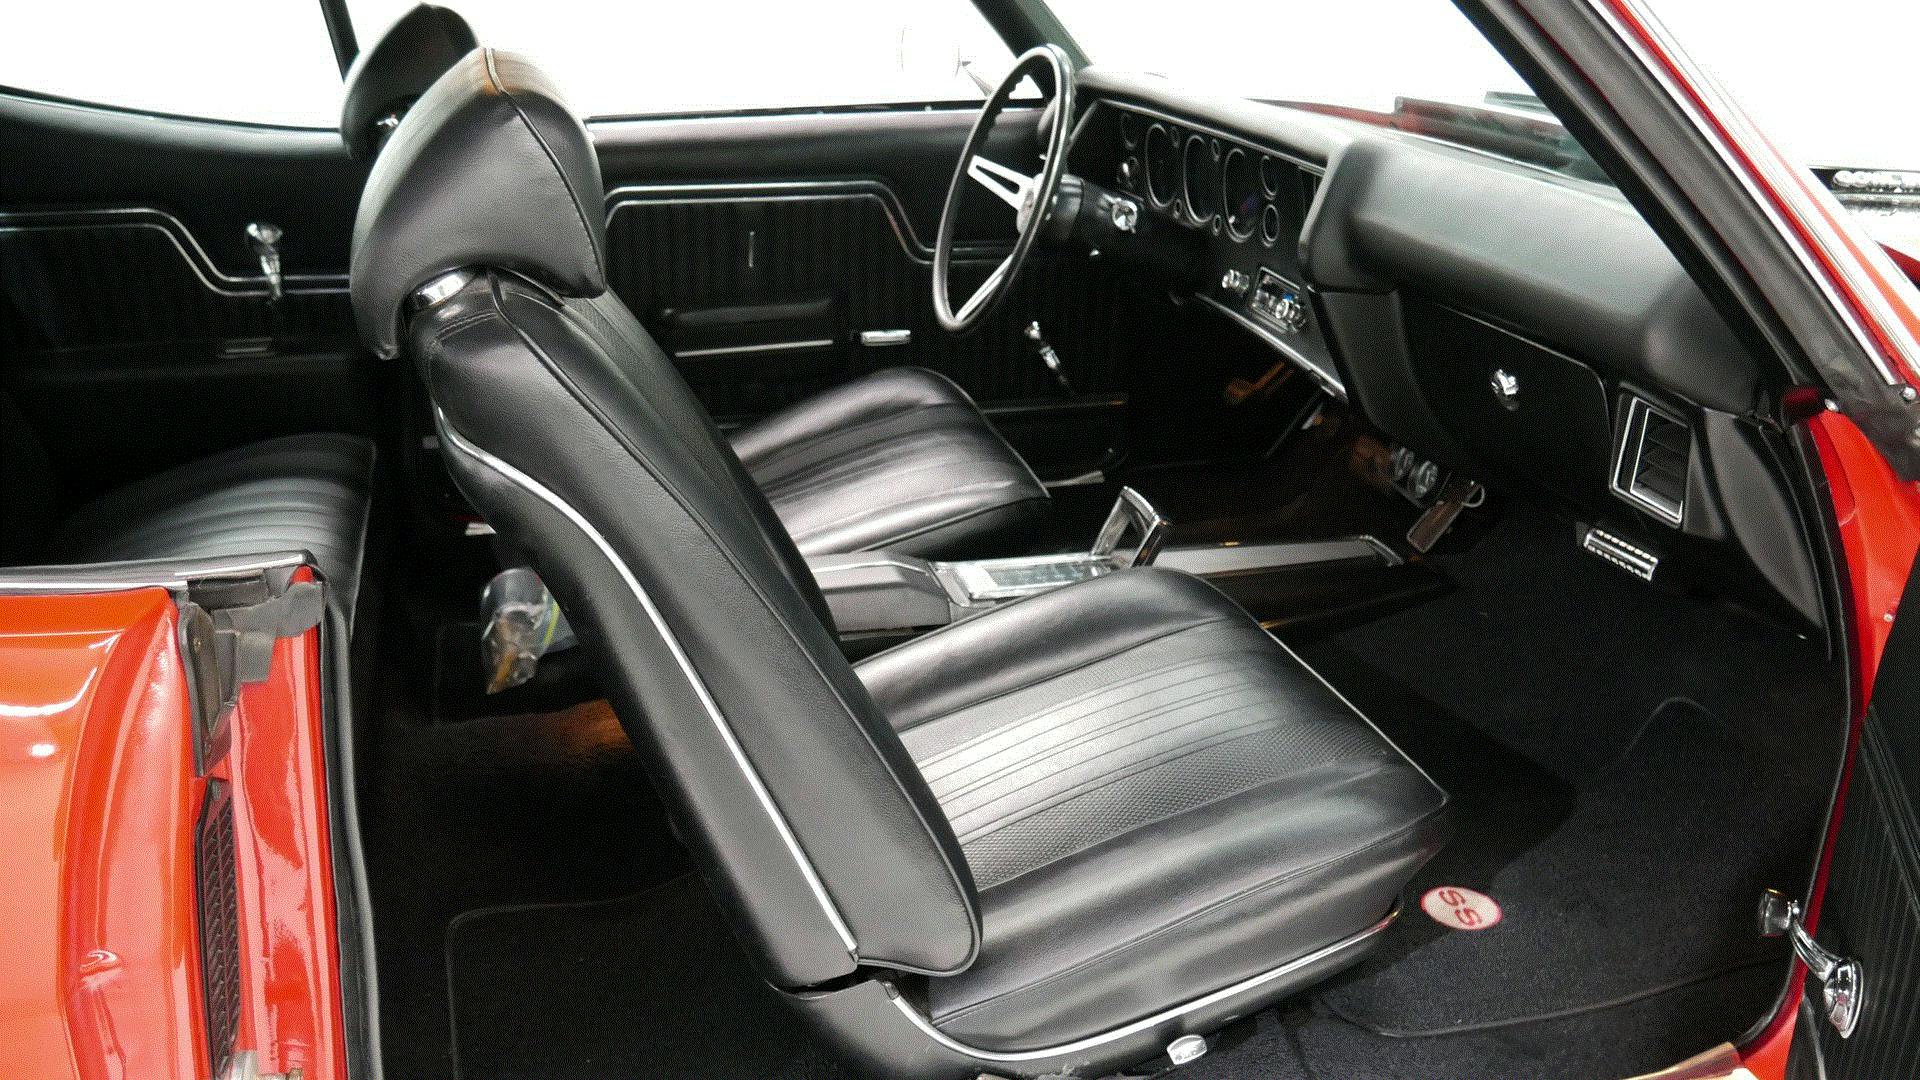 1970 Chevelle SS 454 interior